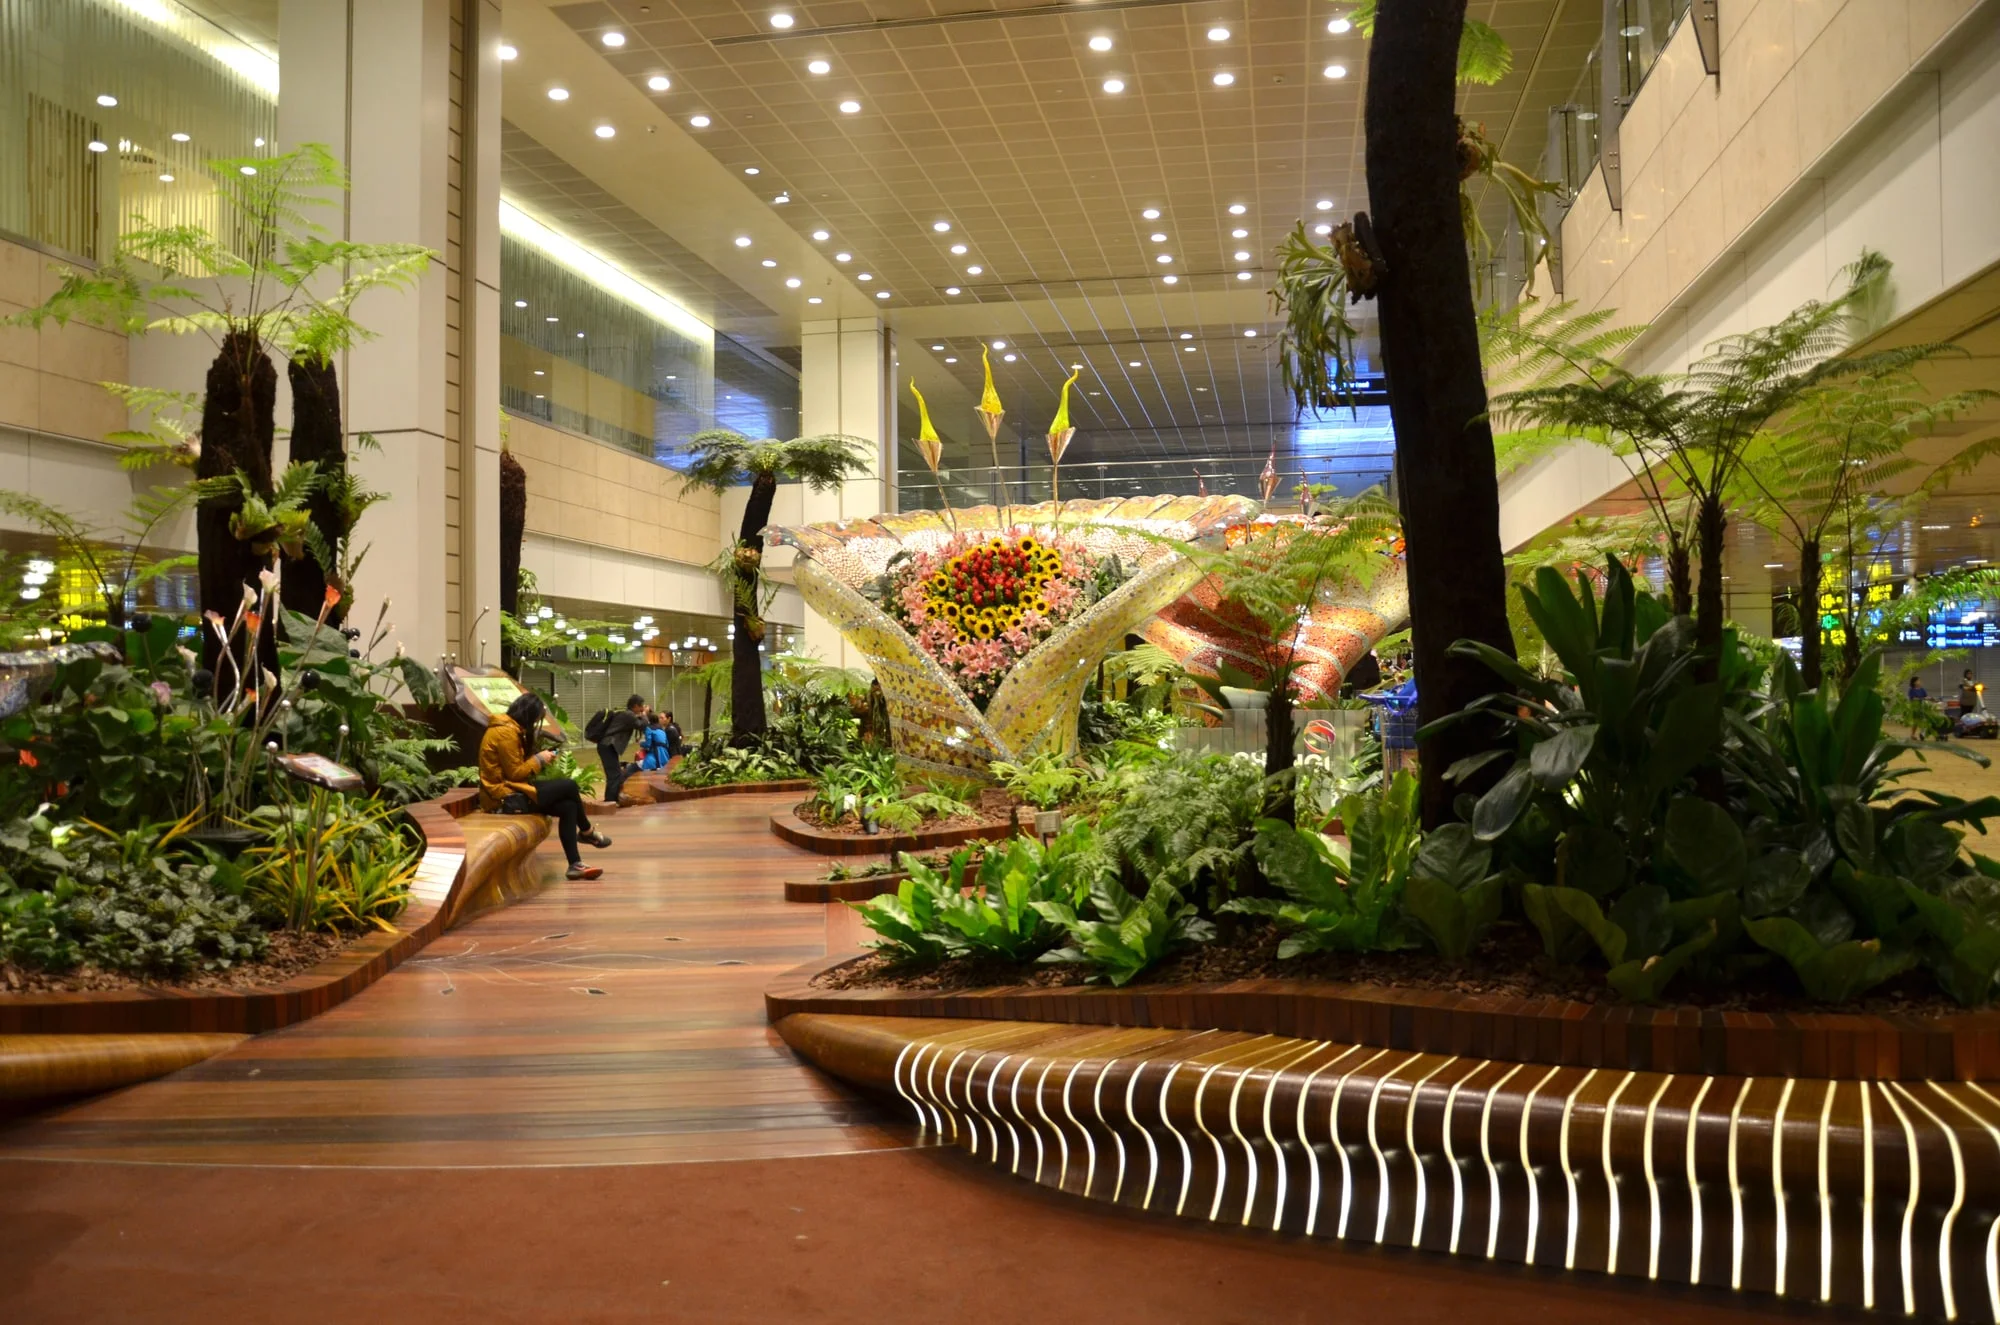 Enchanted garden at Changi international airport, Singapore